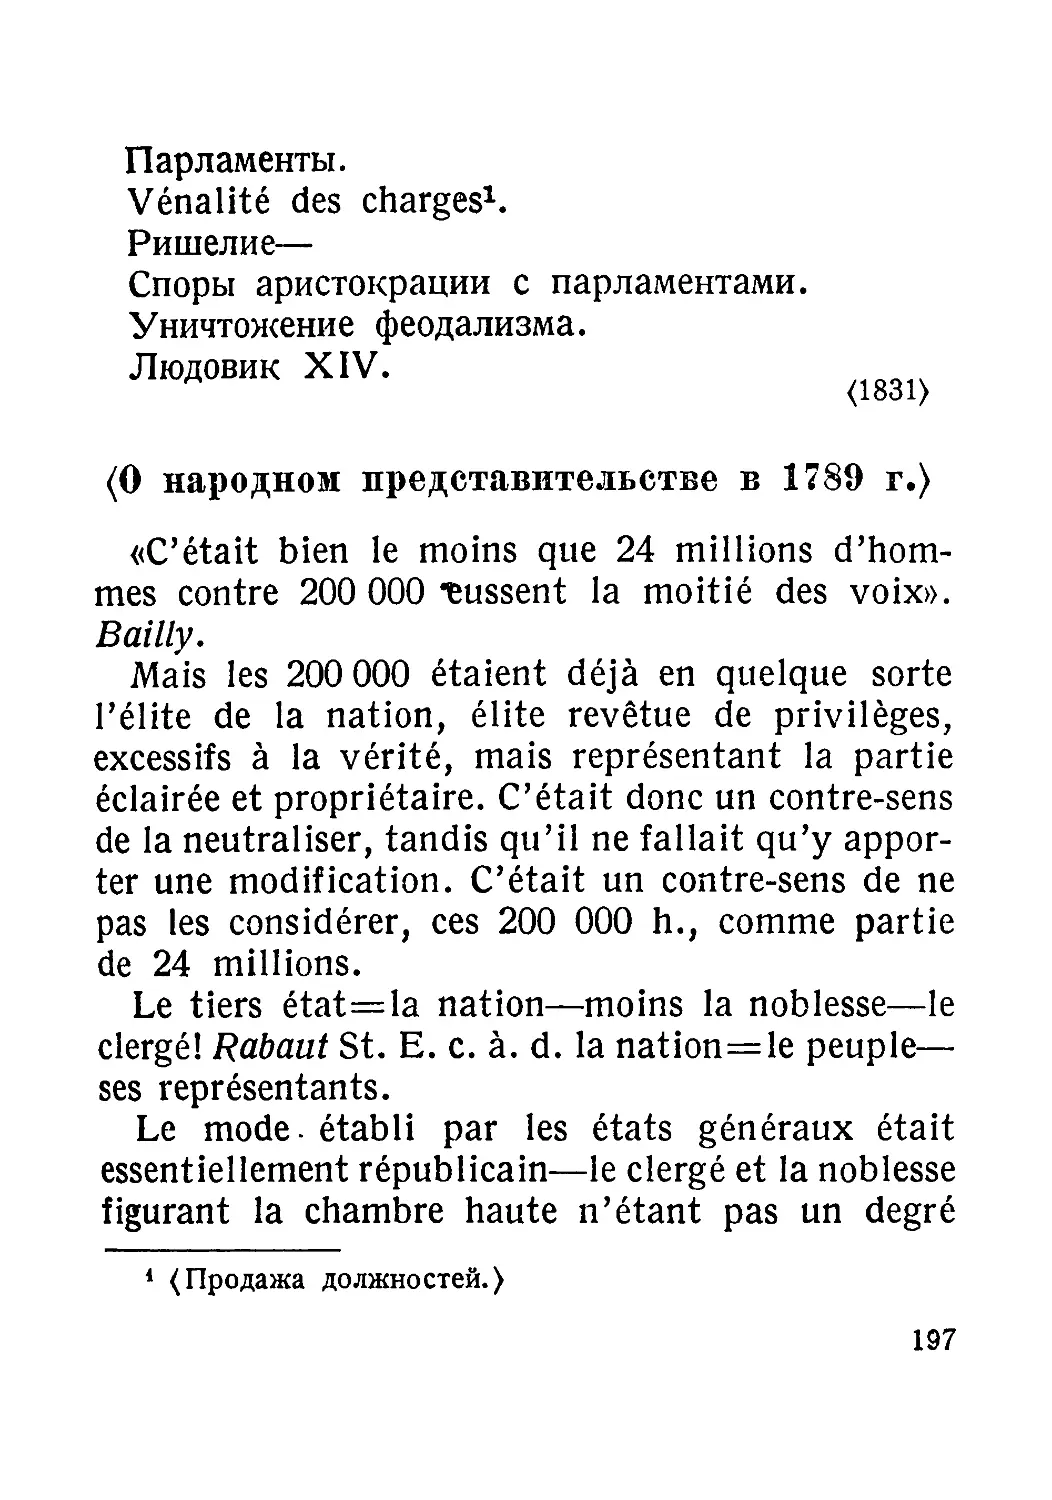 <О народном представительстве в 1789 г.>